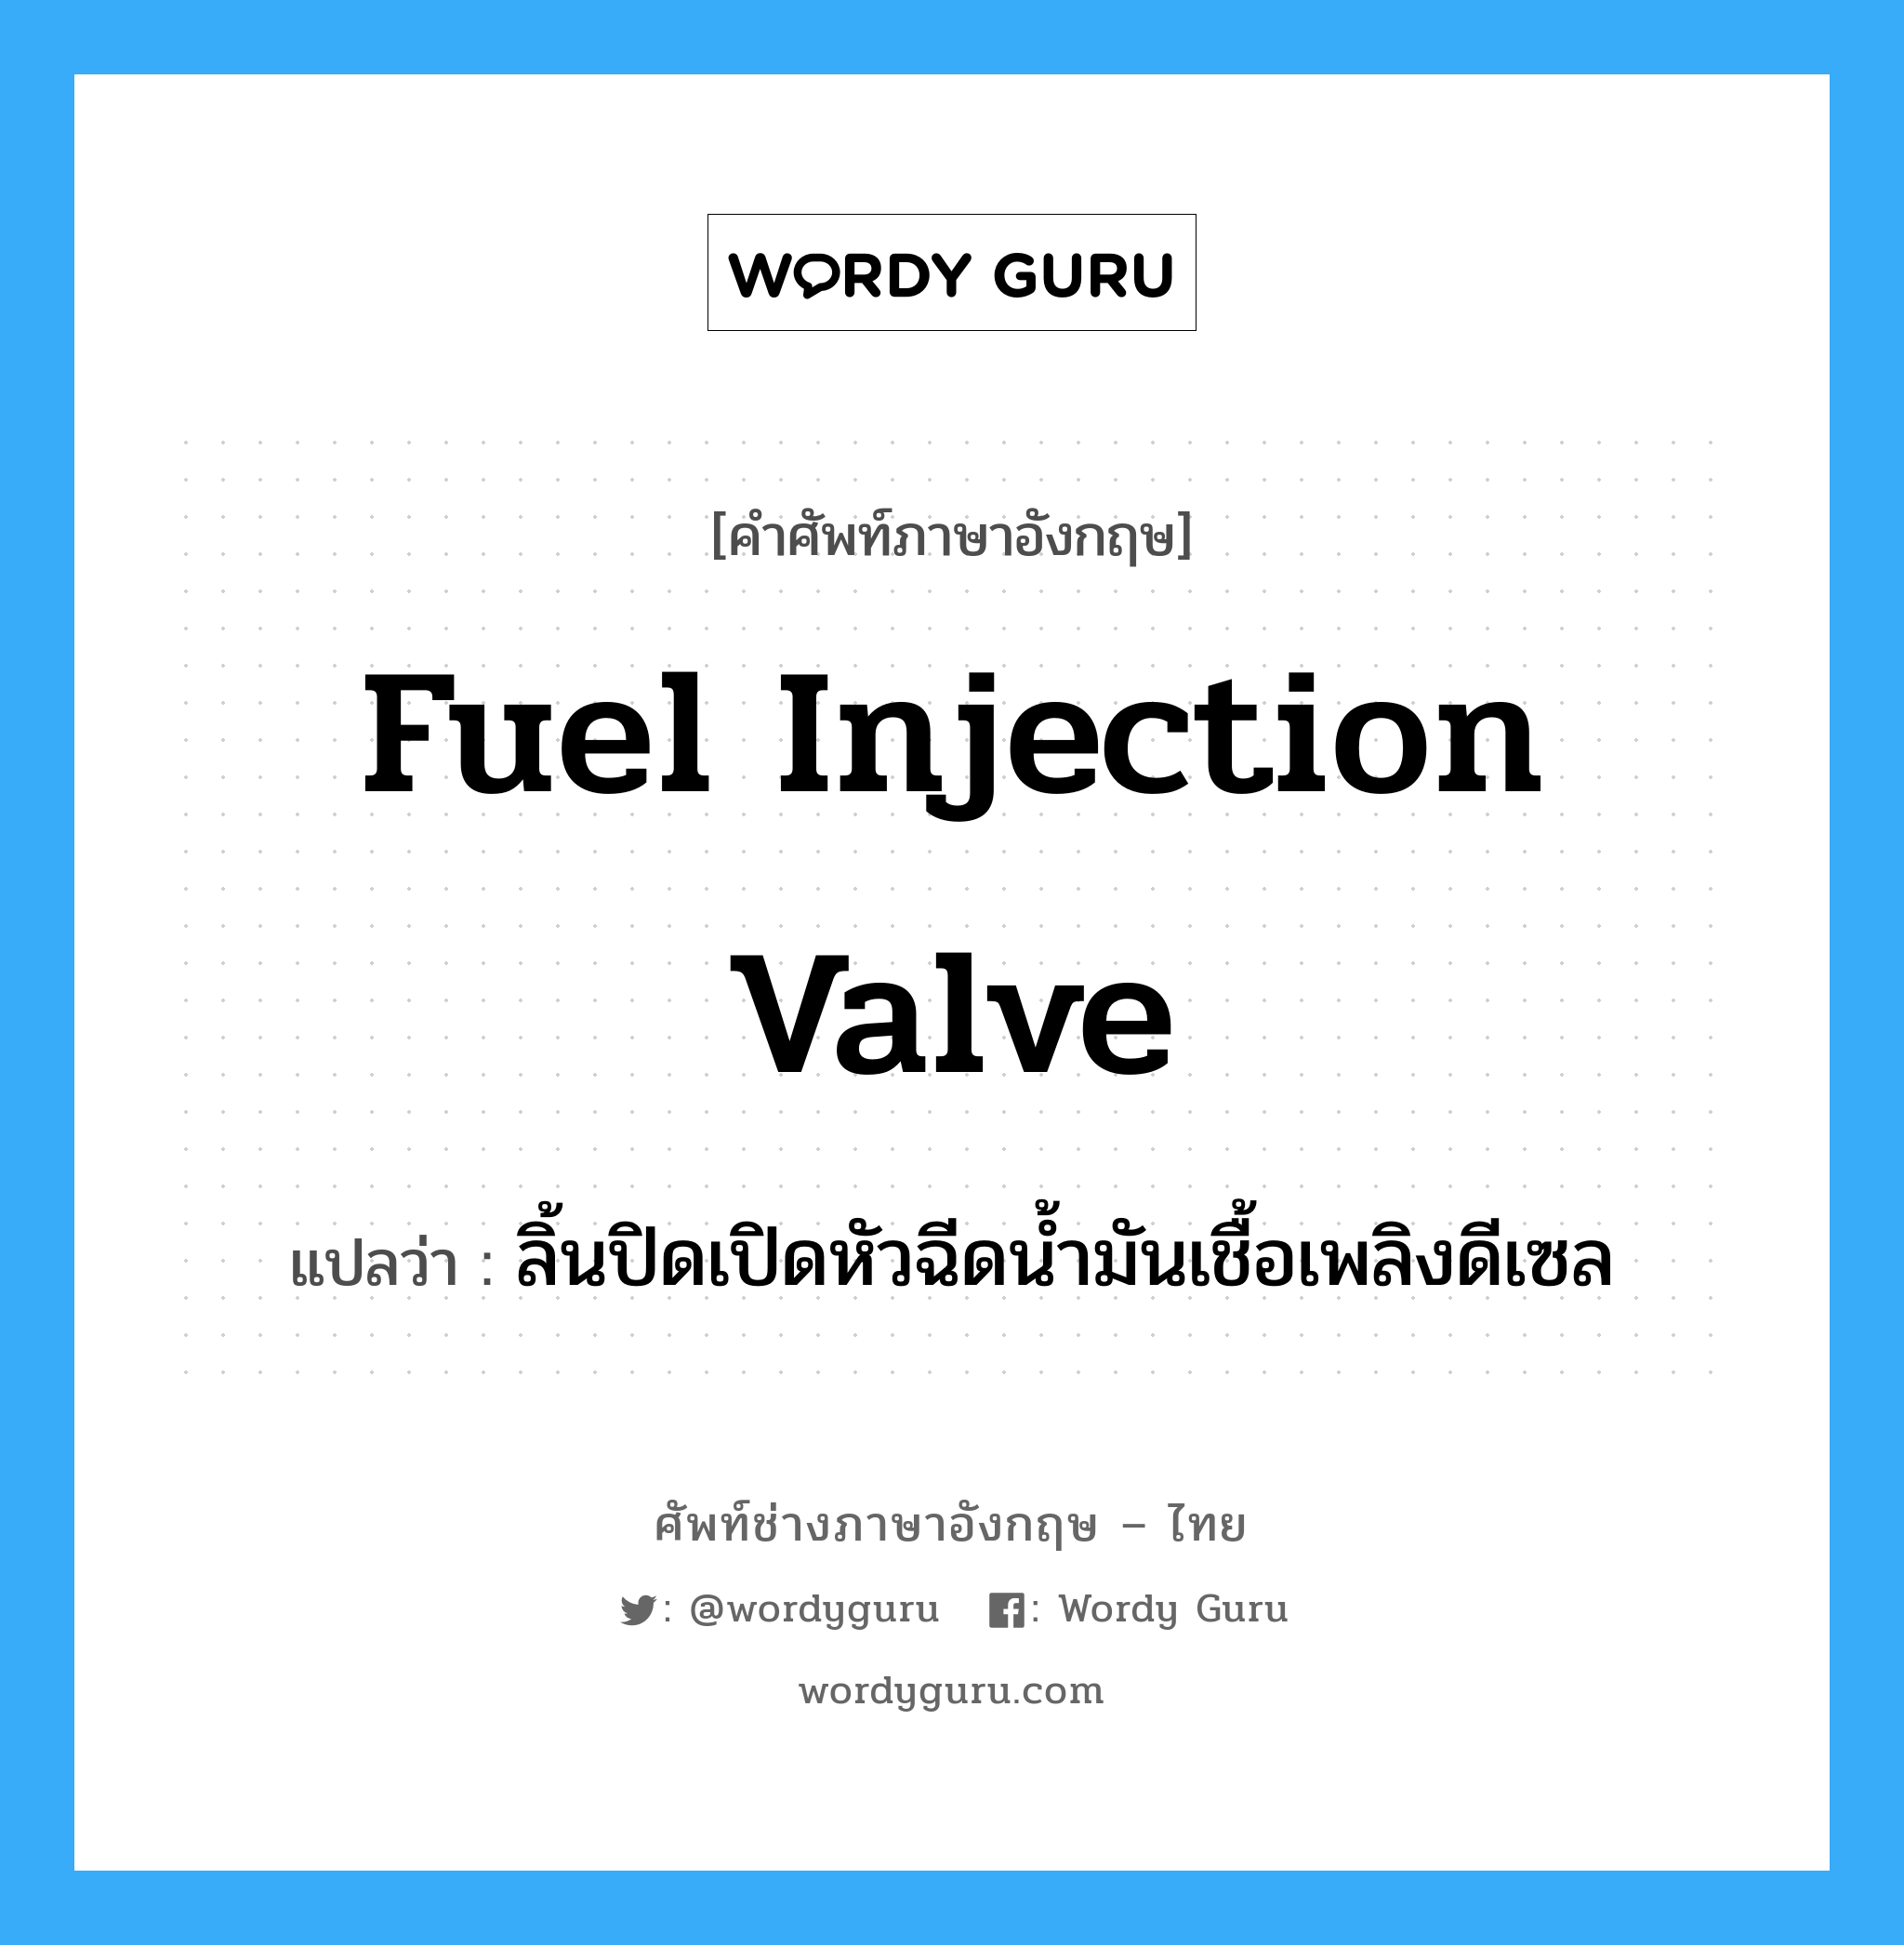 fuel injection valve แปลว่า?, คำศัพท์ช่างภาษาอังกฤษ - ไทย fuel injection valve คำศัพท์ภาษาอังกฤษ fuel injection valve แปลว่า ลิ้นปิดเปิดหัวฉีดน้ำมันเชื้อเพลิงดีเซล